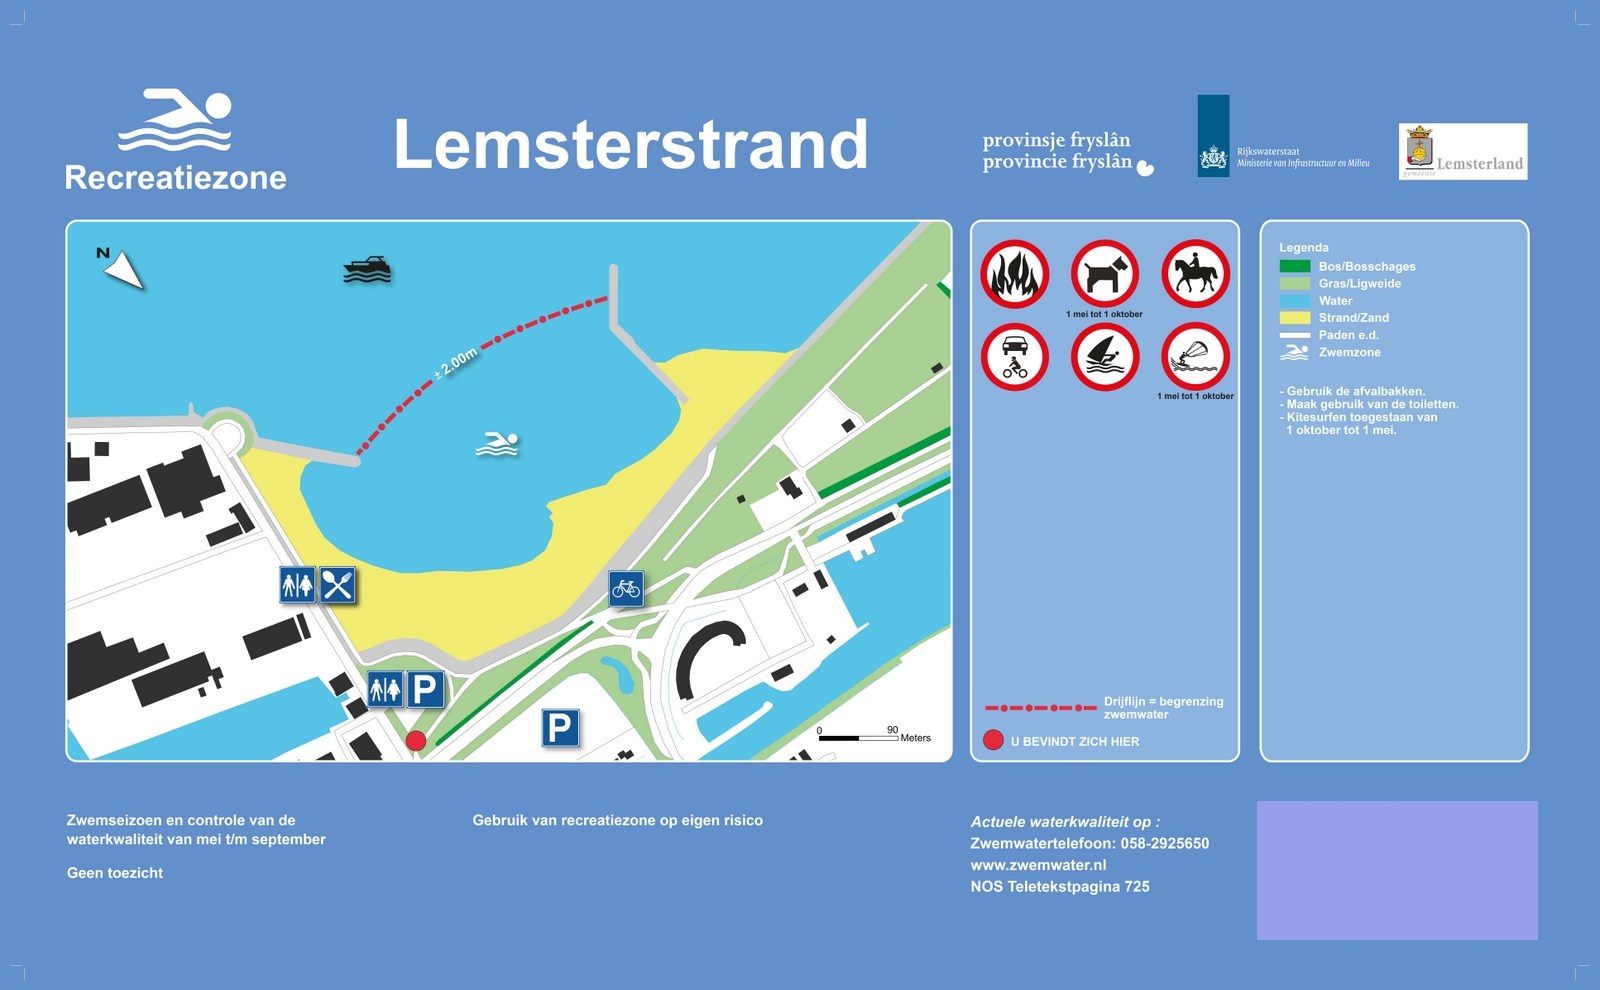 Het informatiebord bij zwemlocatie Lemsterstrand